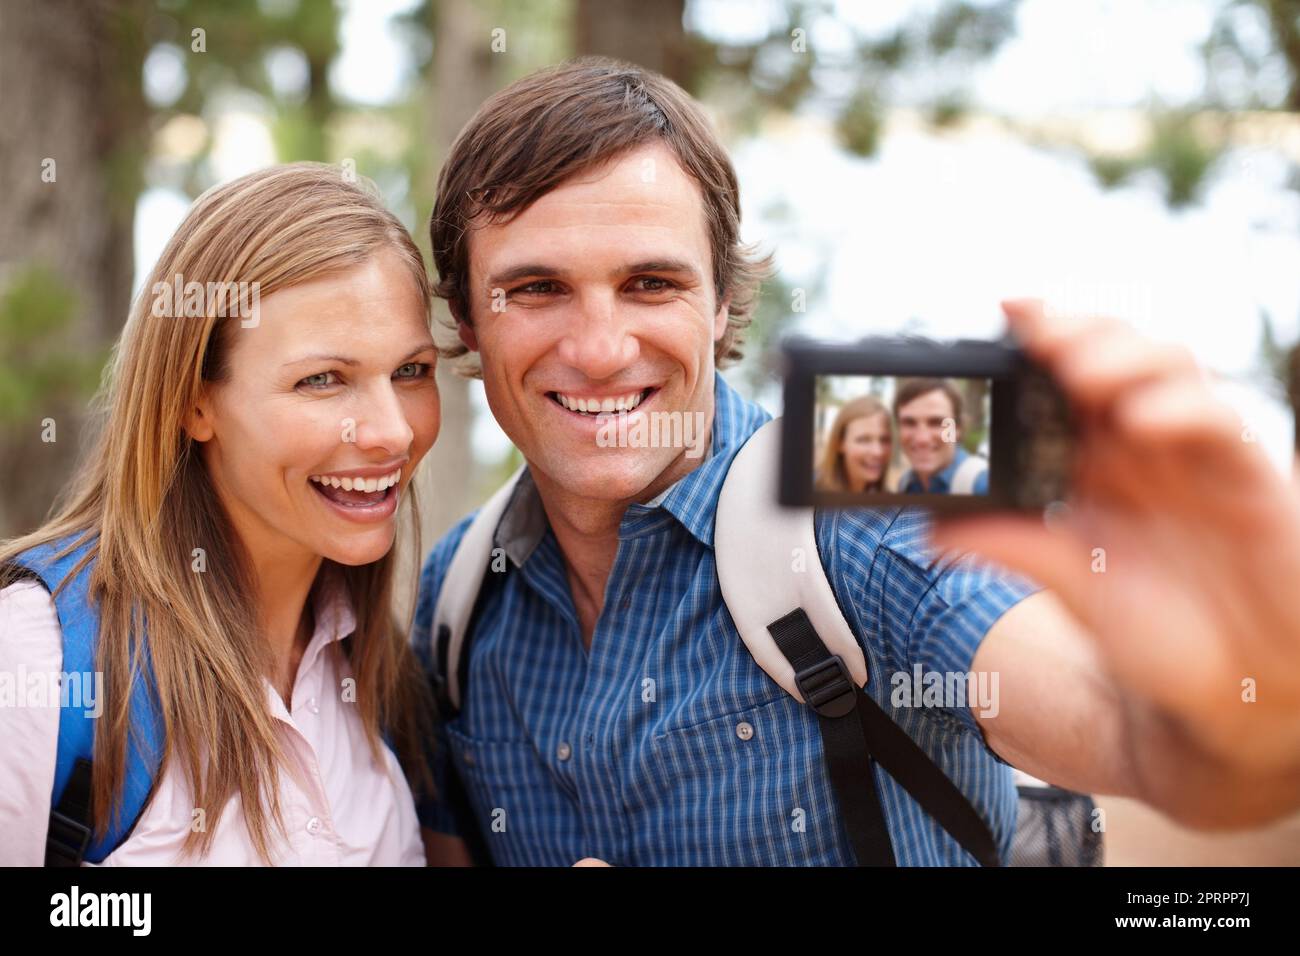 Immortalisez vos souvenirs. Couple regardant l'appareil photo et souriant avec un homme prenant une photo Banque D'Images